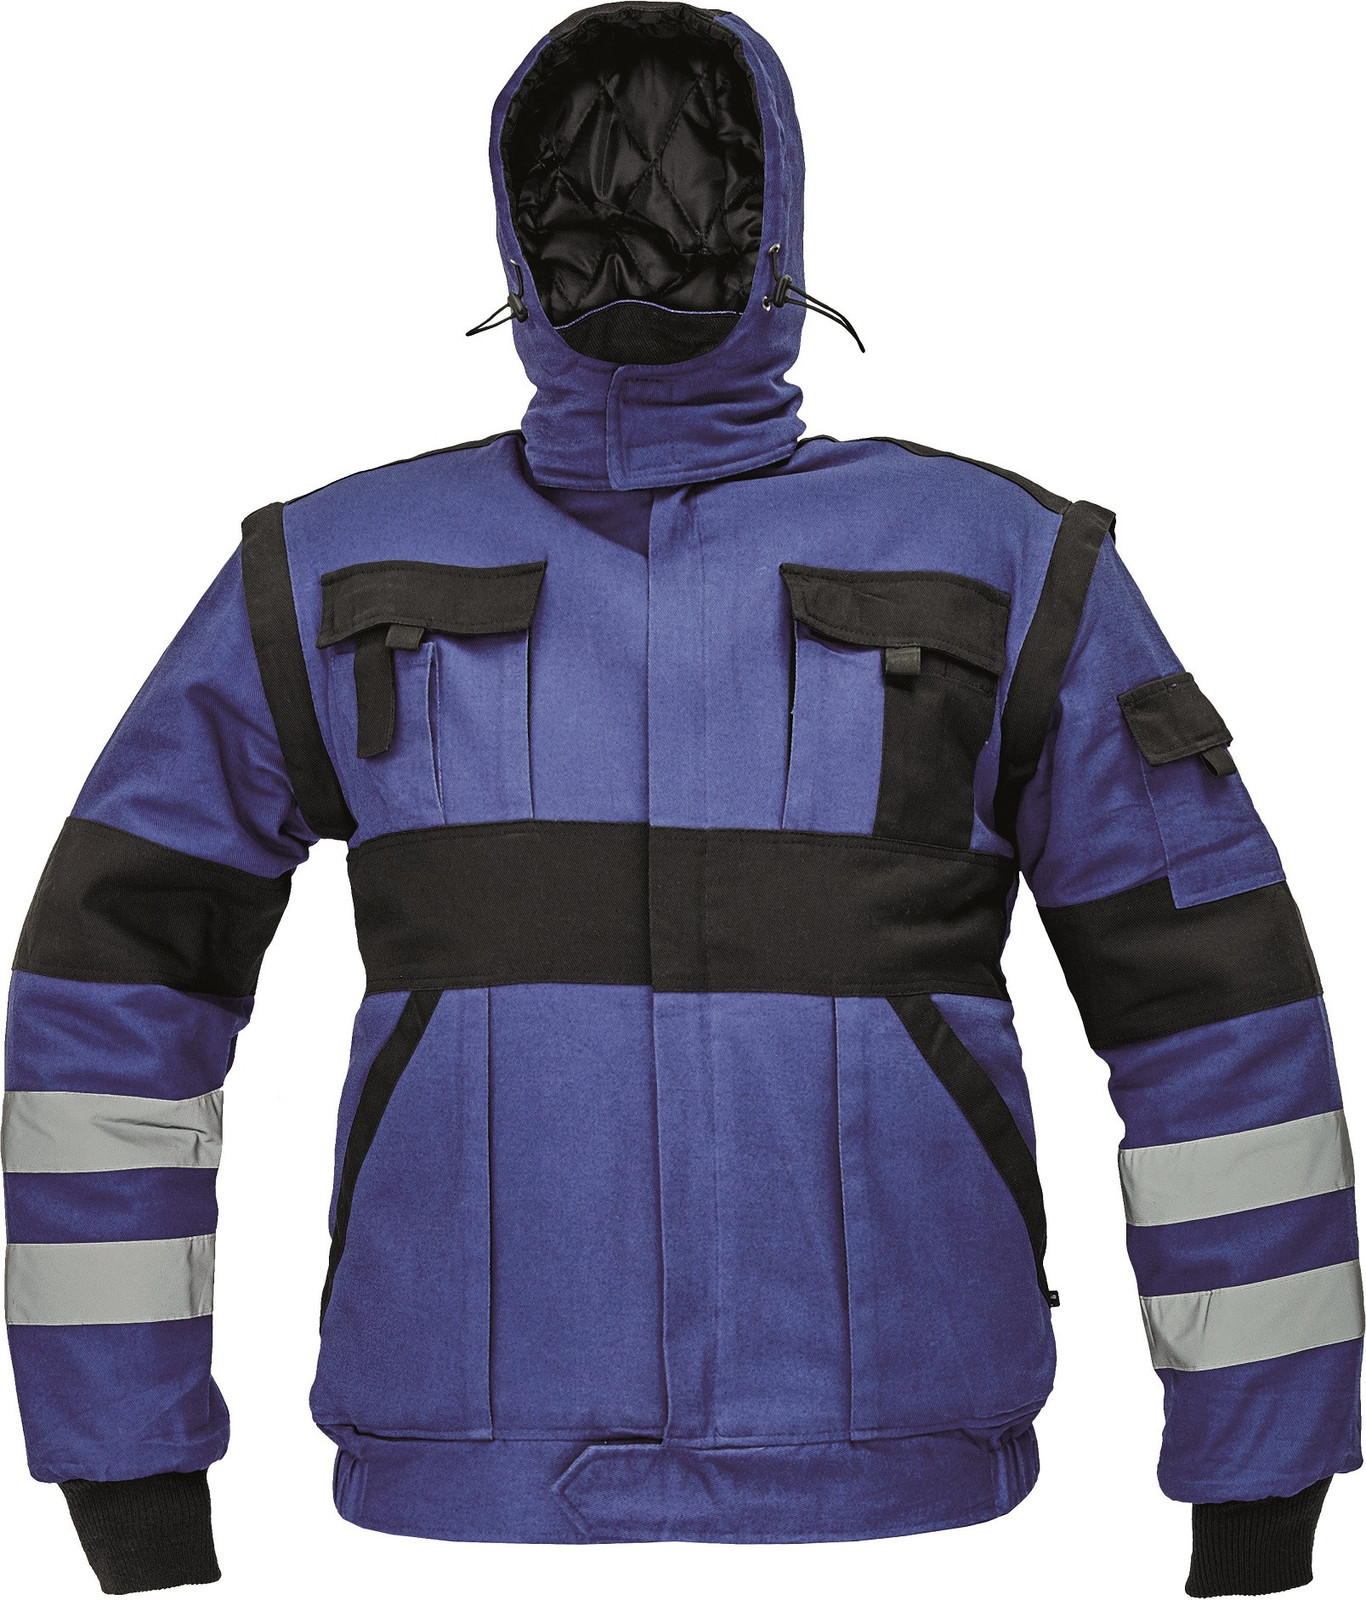 Zateplená montérková bunda Max Winter s reflexnými pruhmi 2v1 - veľkosť: 48, farba: modrá/čierna